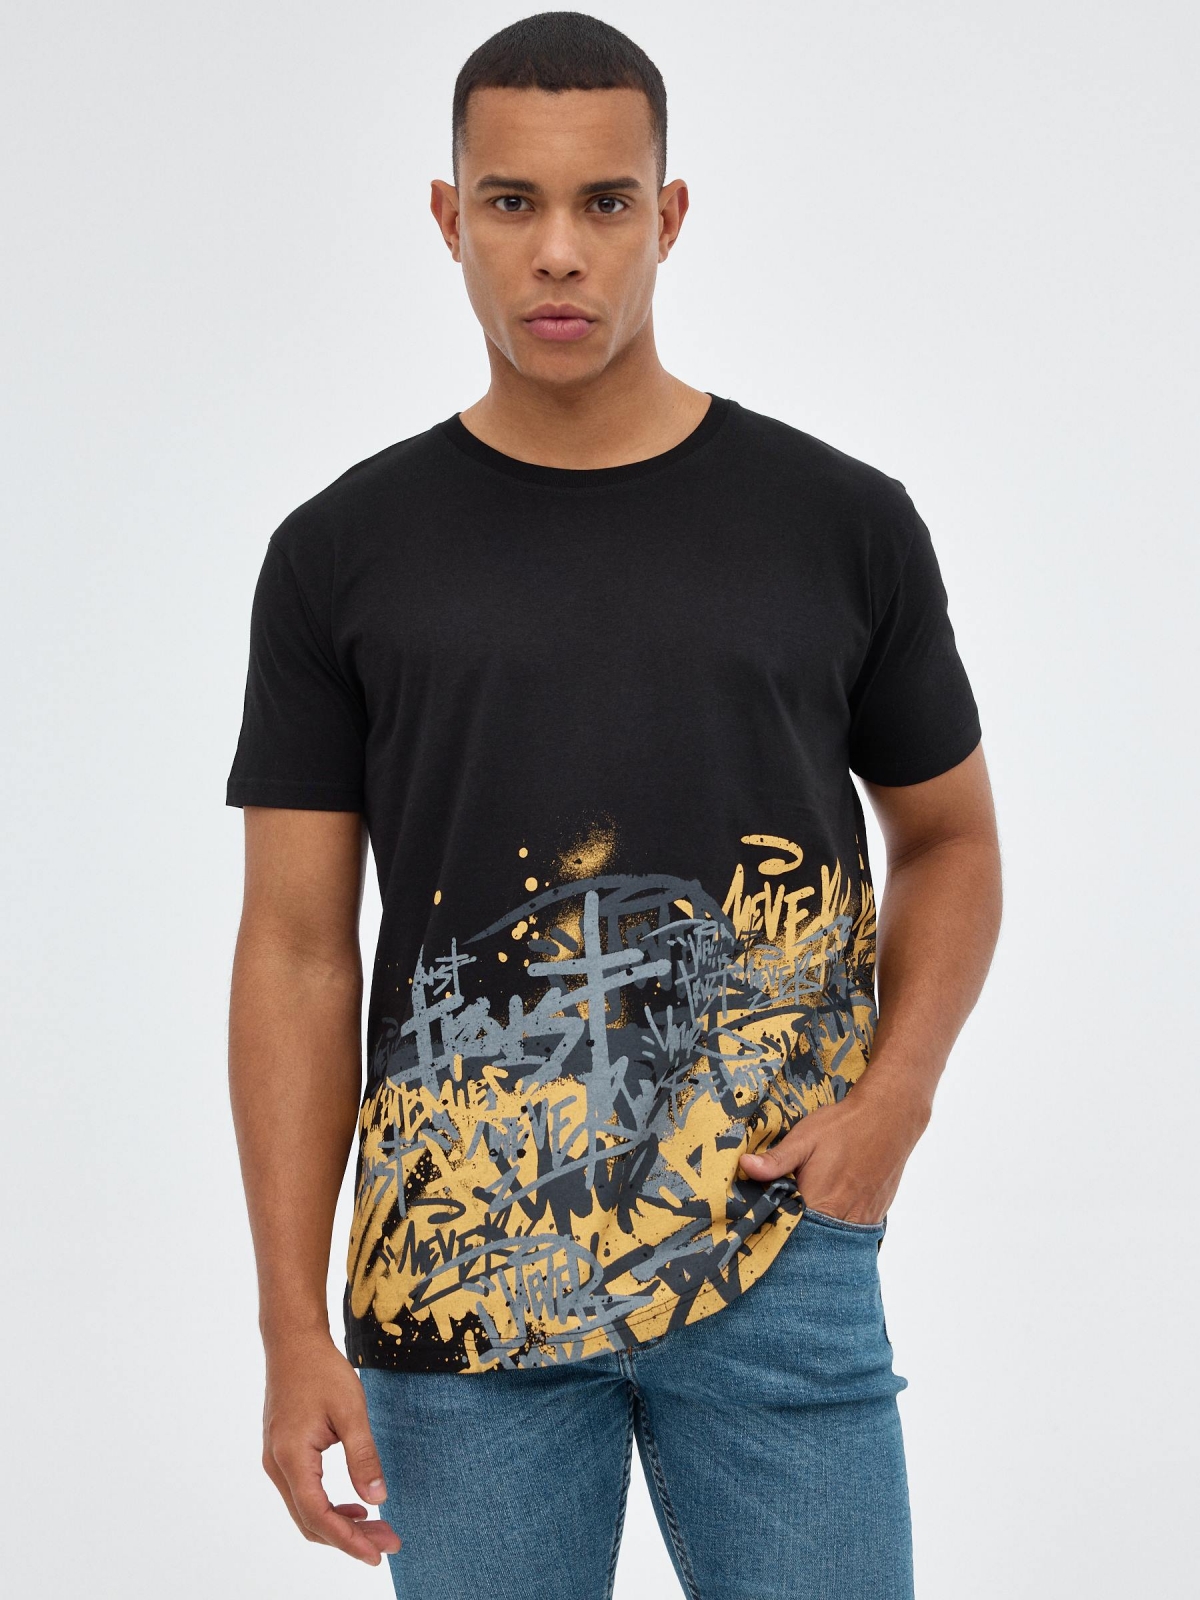 T-shirt preta com impressão de graffiti preto vista meia frontal